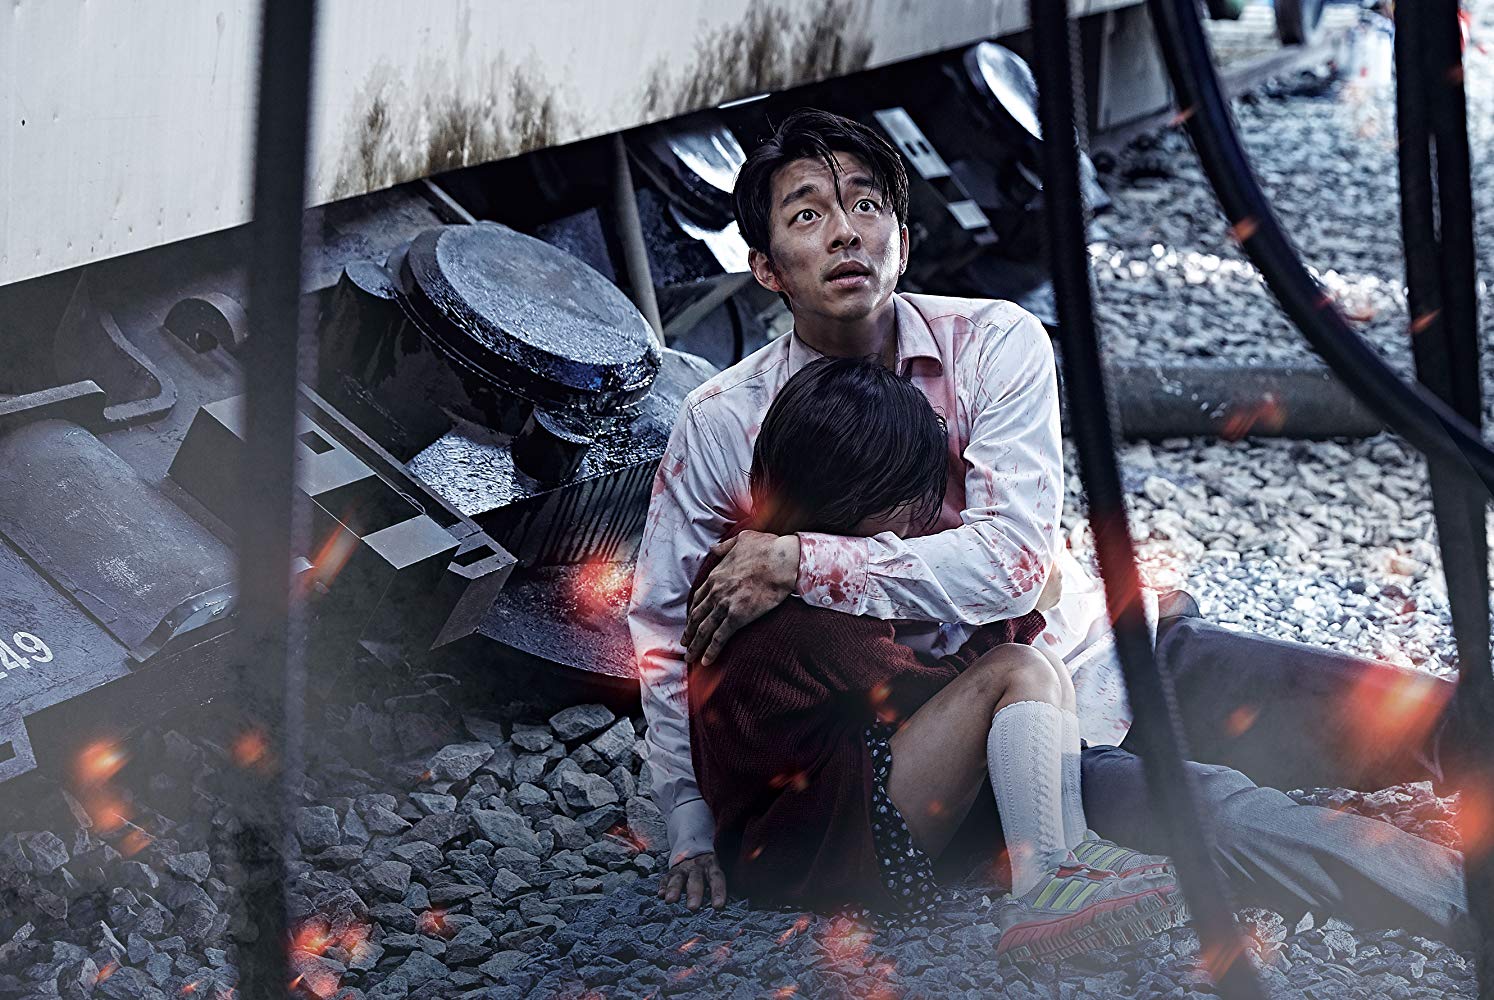 به بهانه موفقیت تاریخی فیلم «انگل» (Parasite) در مراسم اسکار 2020 قصد داریم شما را با تعدادی از بهترین فیلم های سینمای کره جنوبی آشنا کنیم.